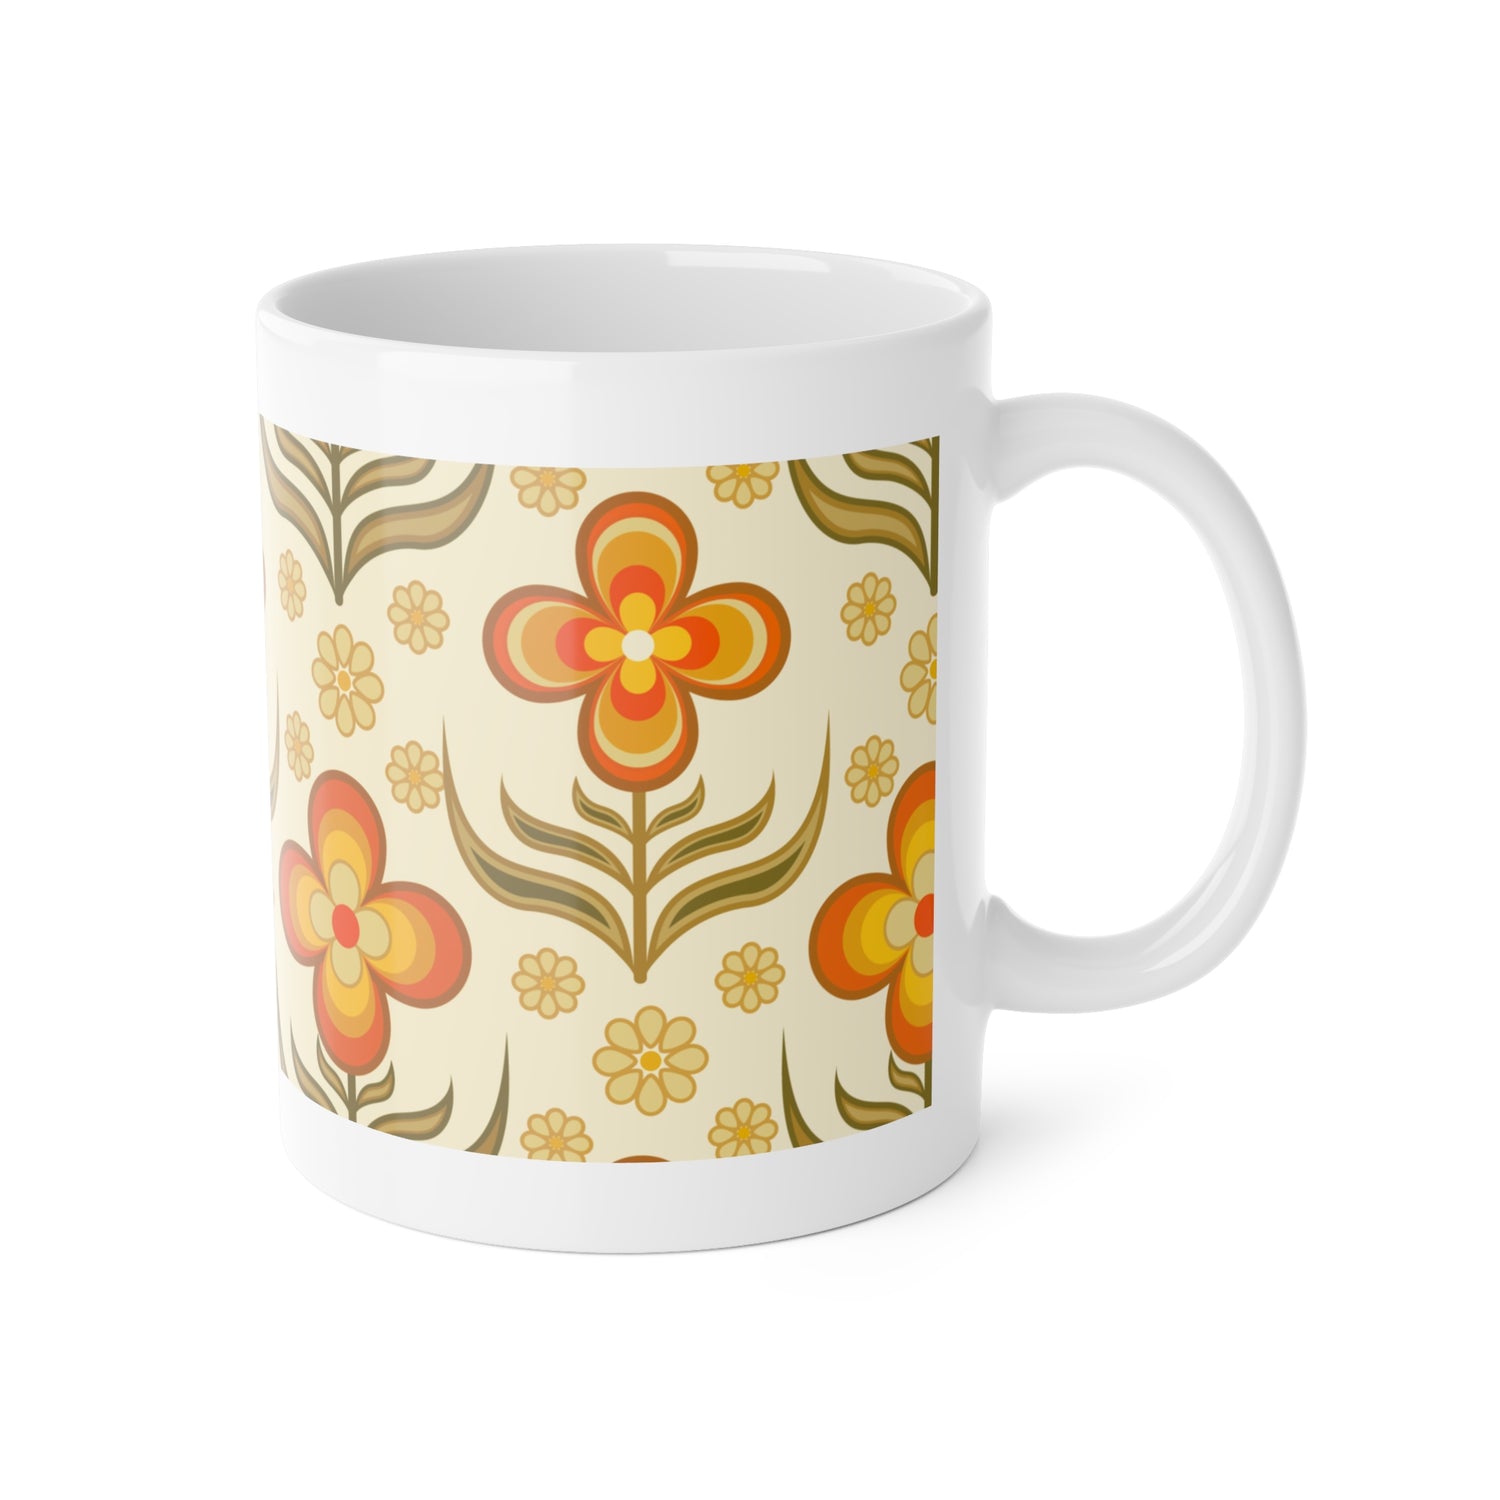 70s Flower Power, Daily Cup of Retro White Ceramic Mug, 11oz